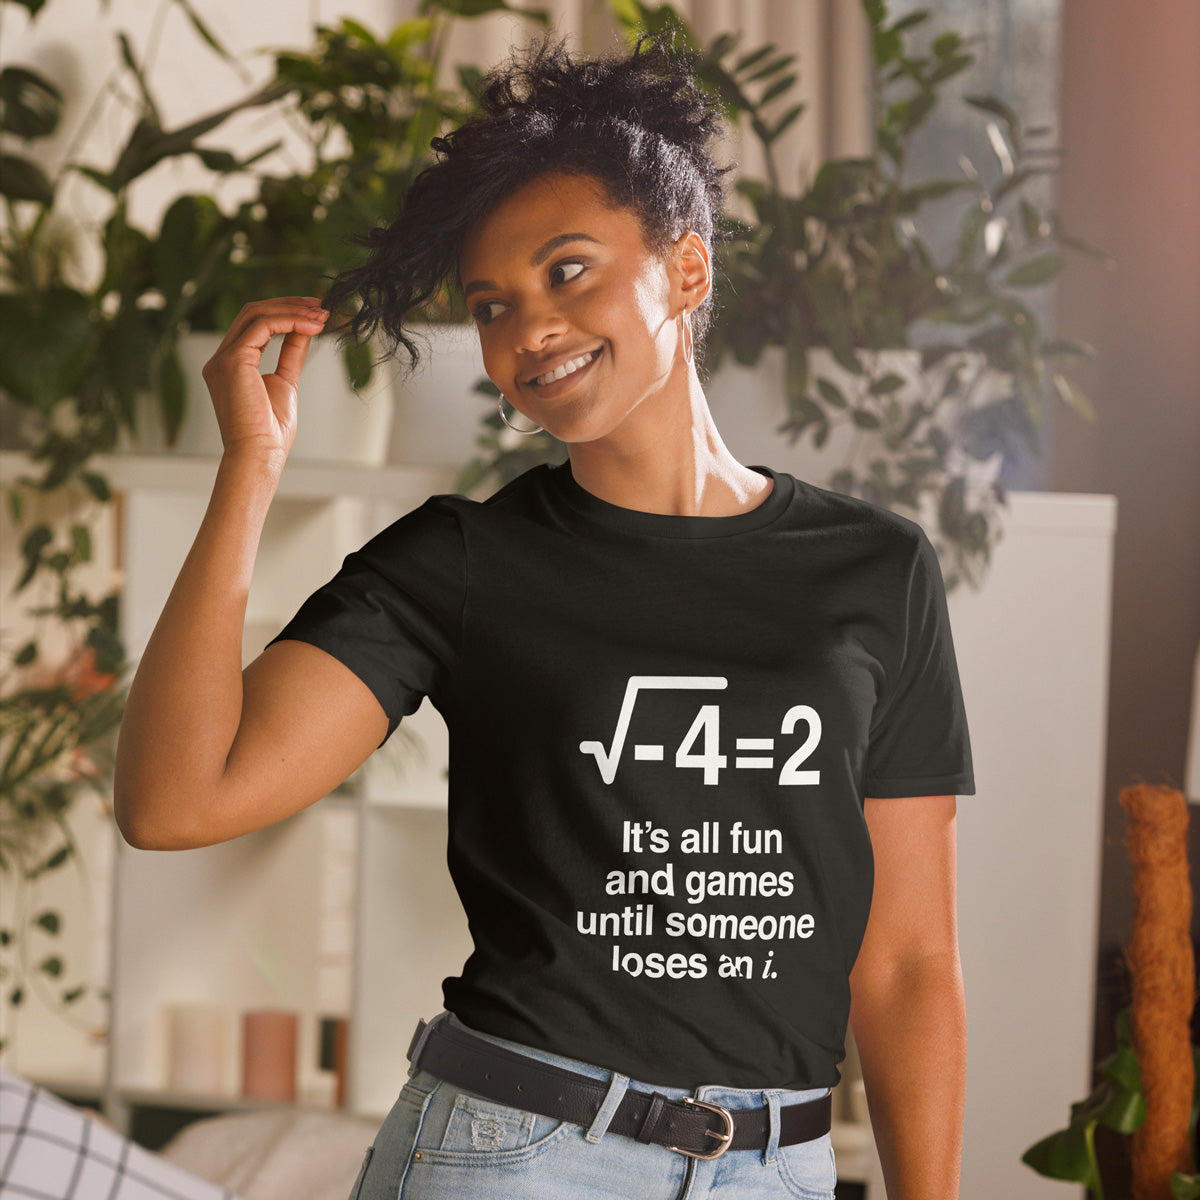 Teacher T-shirts